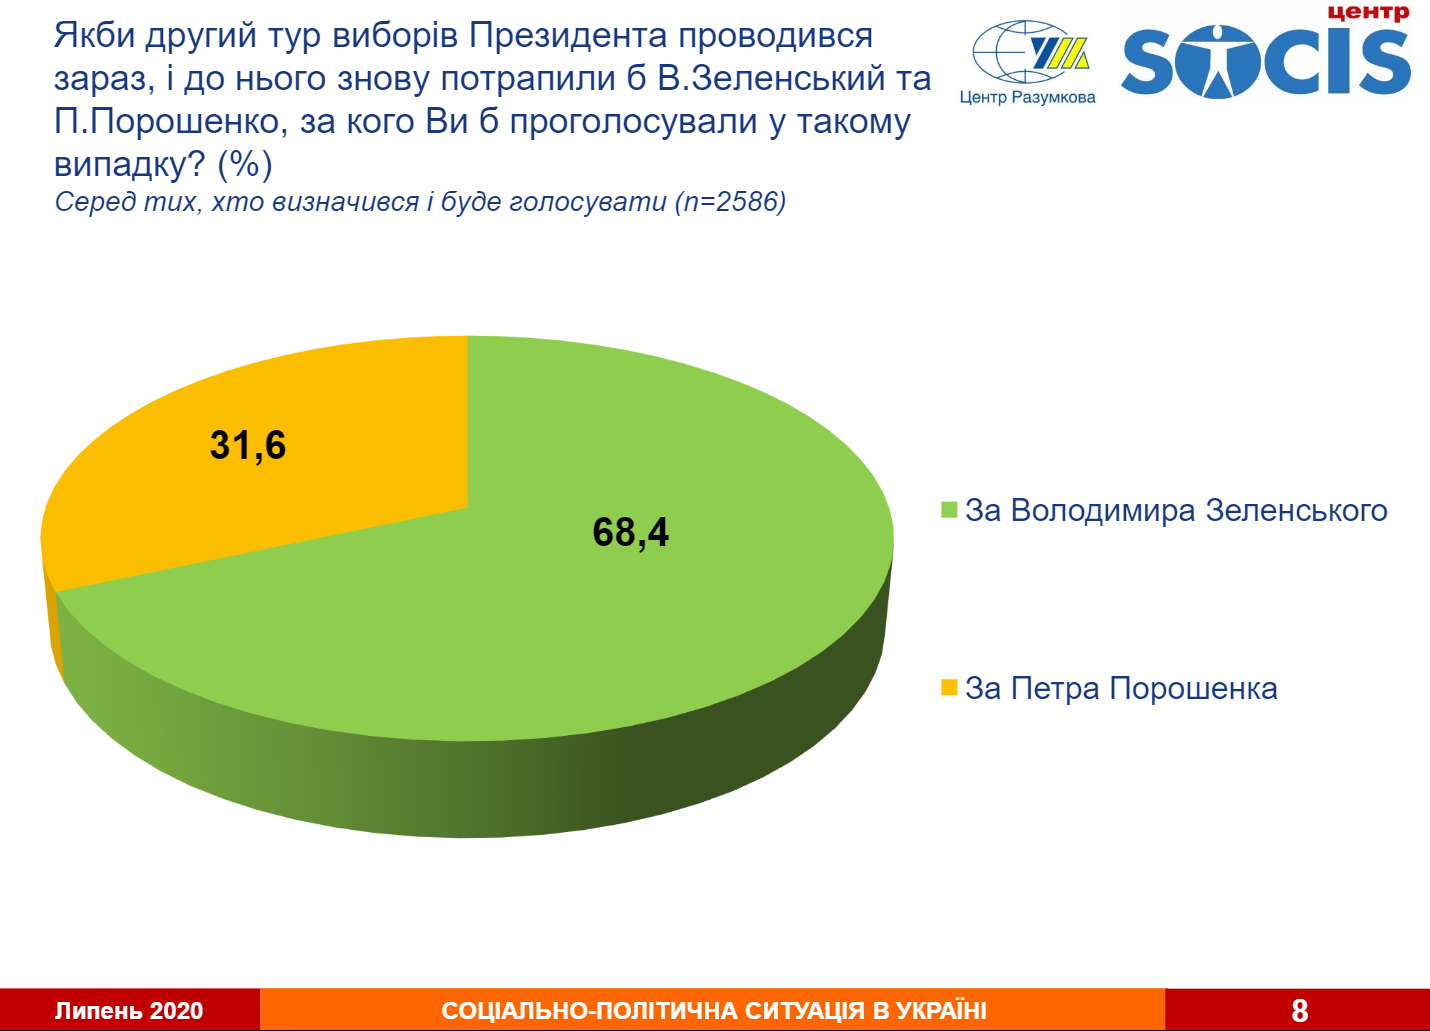 Если бы выборы состоялись завтра: Зеленский и Порошенко встретились бы во втором туре - соцопрос 3